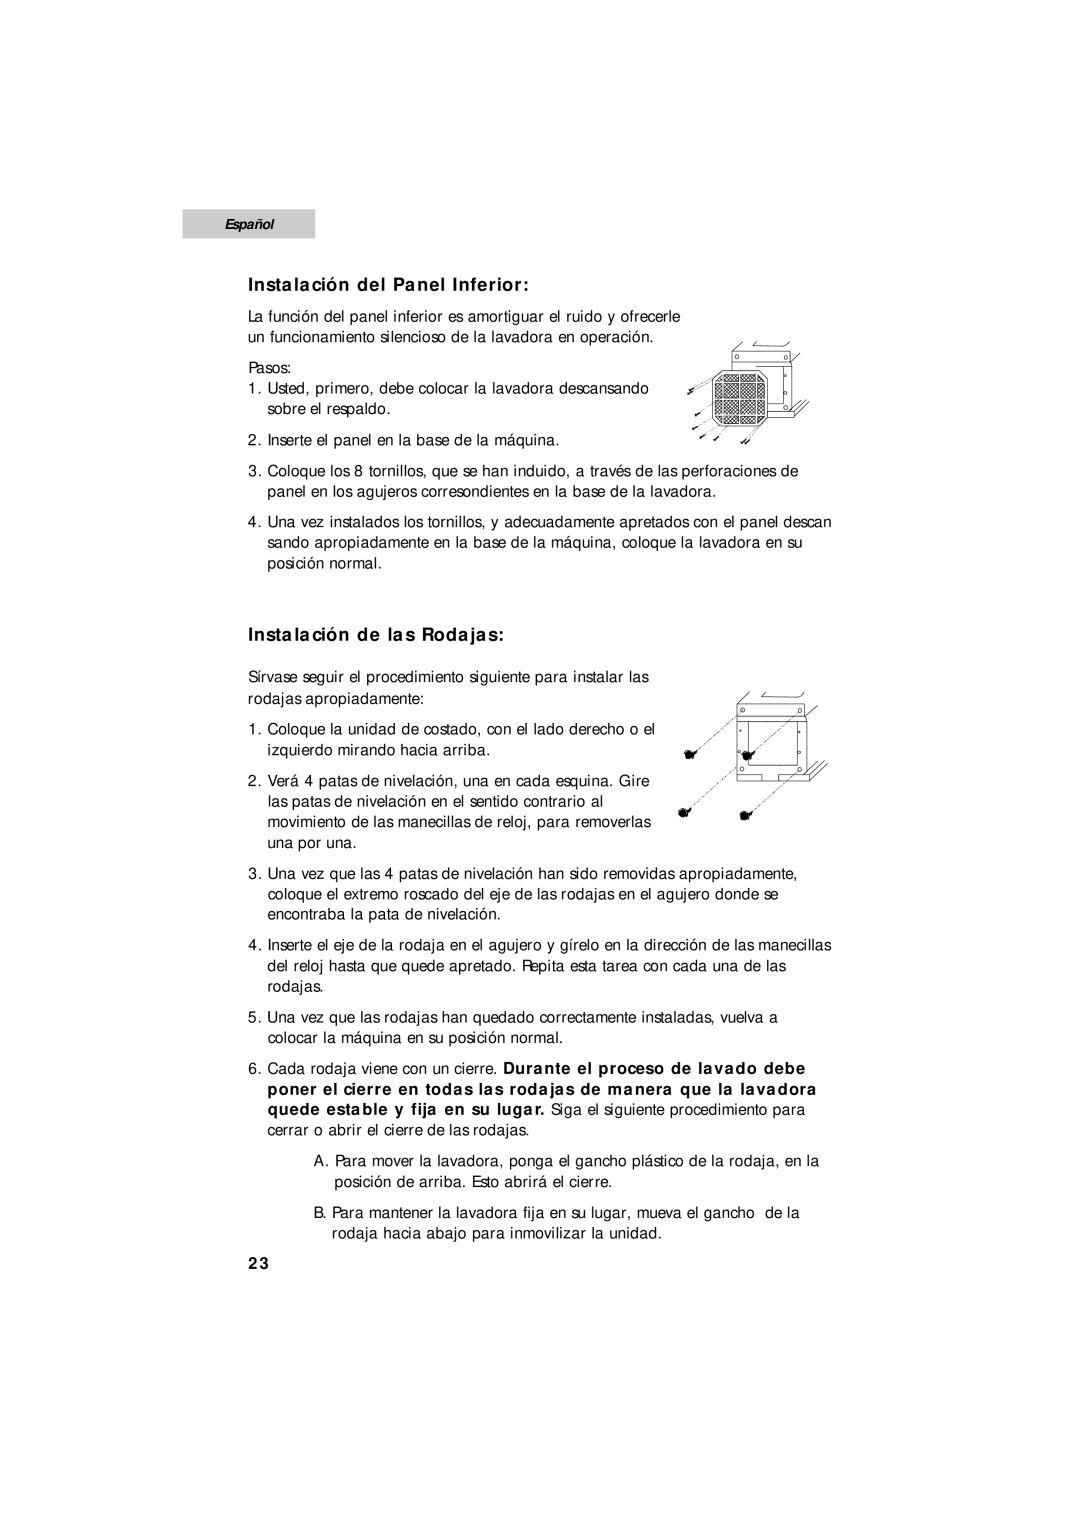 Summit SPW1200P user manual Instalación del Panel Inferior, Instalación de las Rodajas, Español 